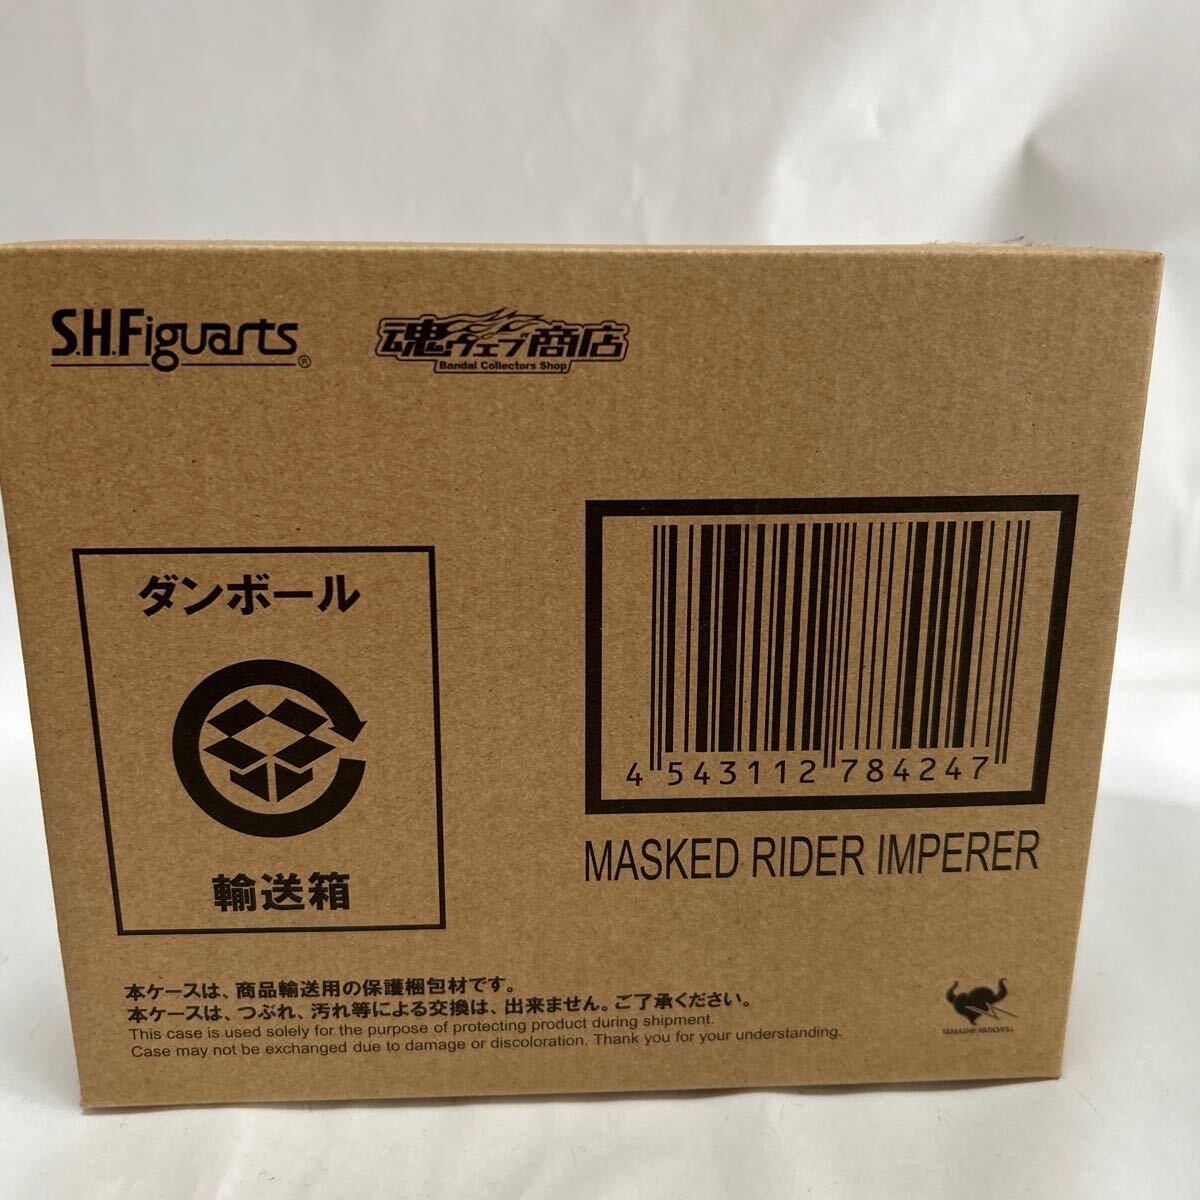  Bandai душа web магазин ограничение S.H.Figuarts [ Kamen Rider Dragon Knight ] Kamen Rider импеллер нераспечатанный перевозка коробка есть 